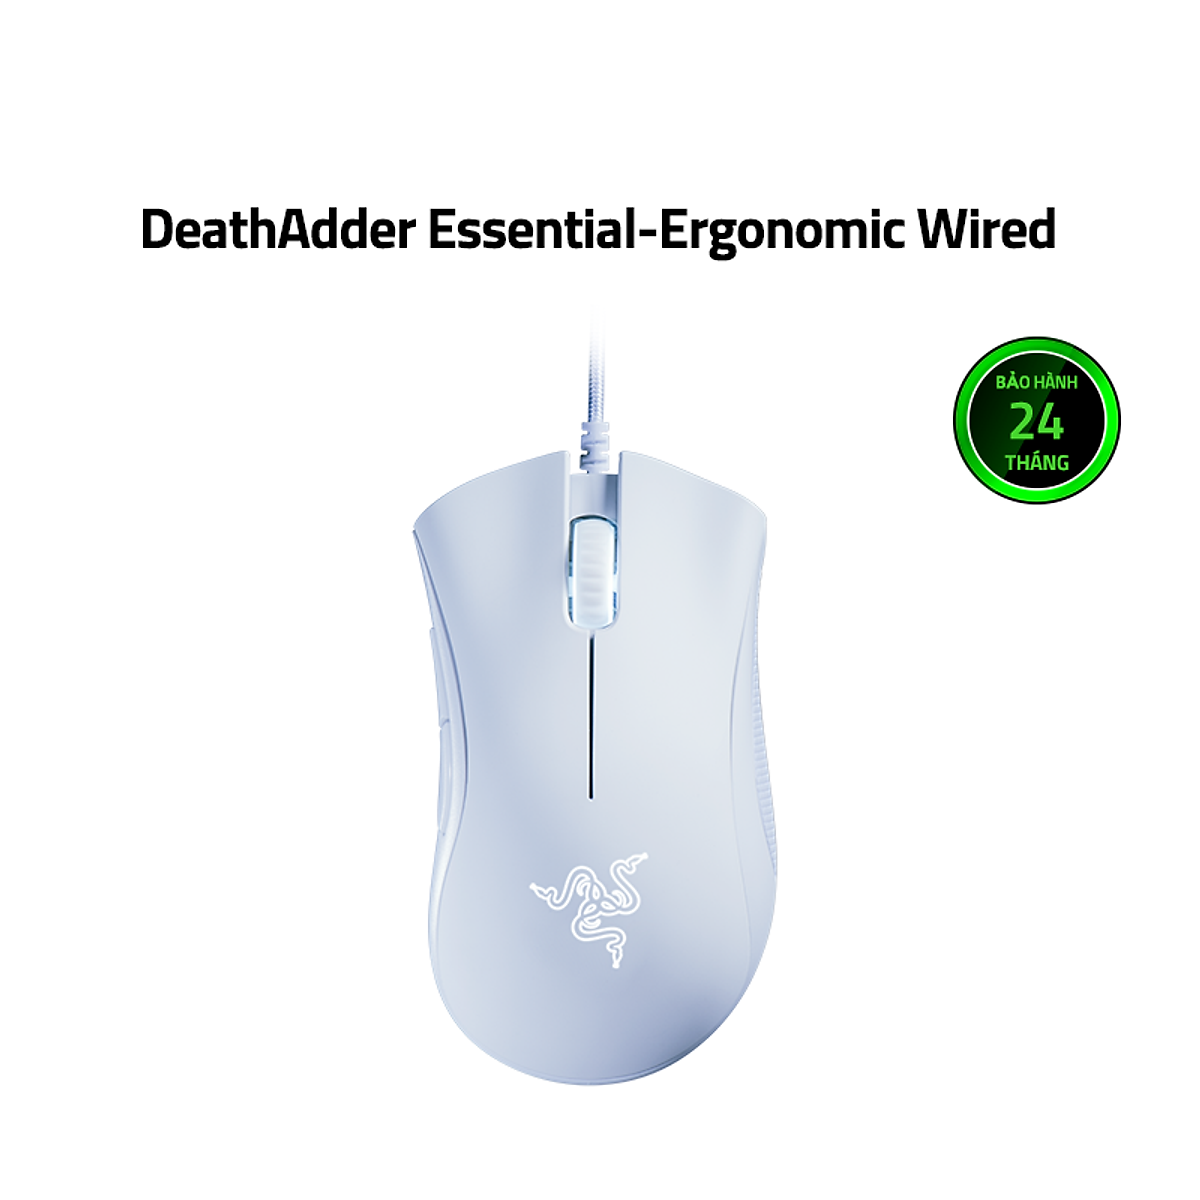 Chuột Razer DeathAdder Essential-Ergonomic Wired_Mới, hàng chính hãng